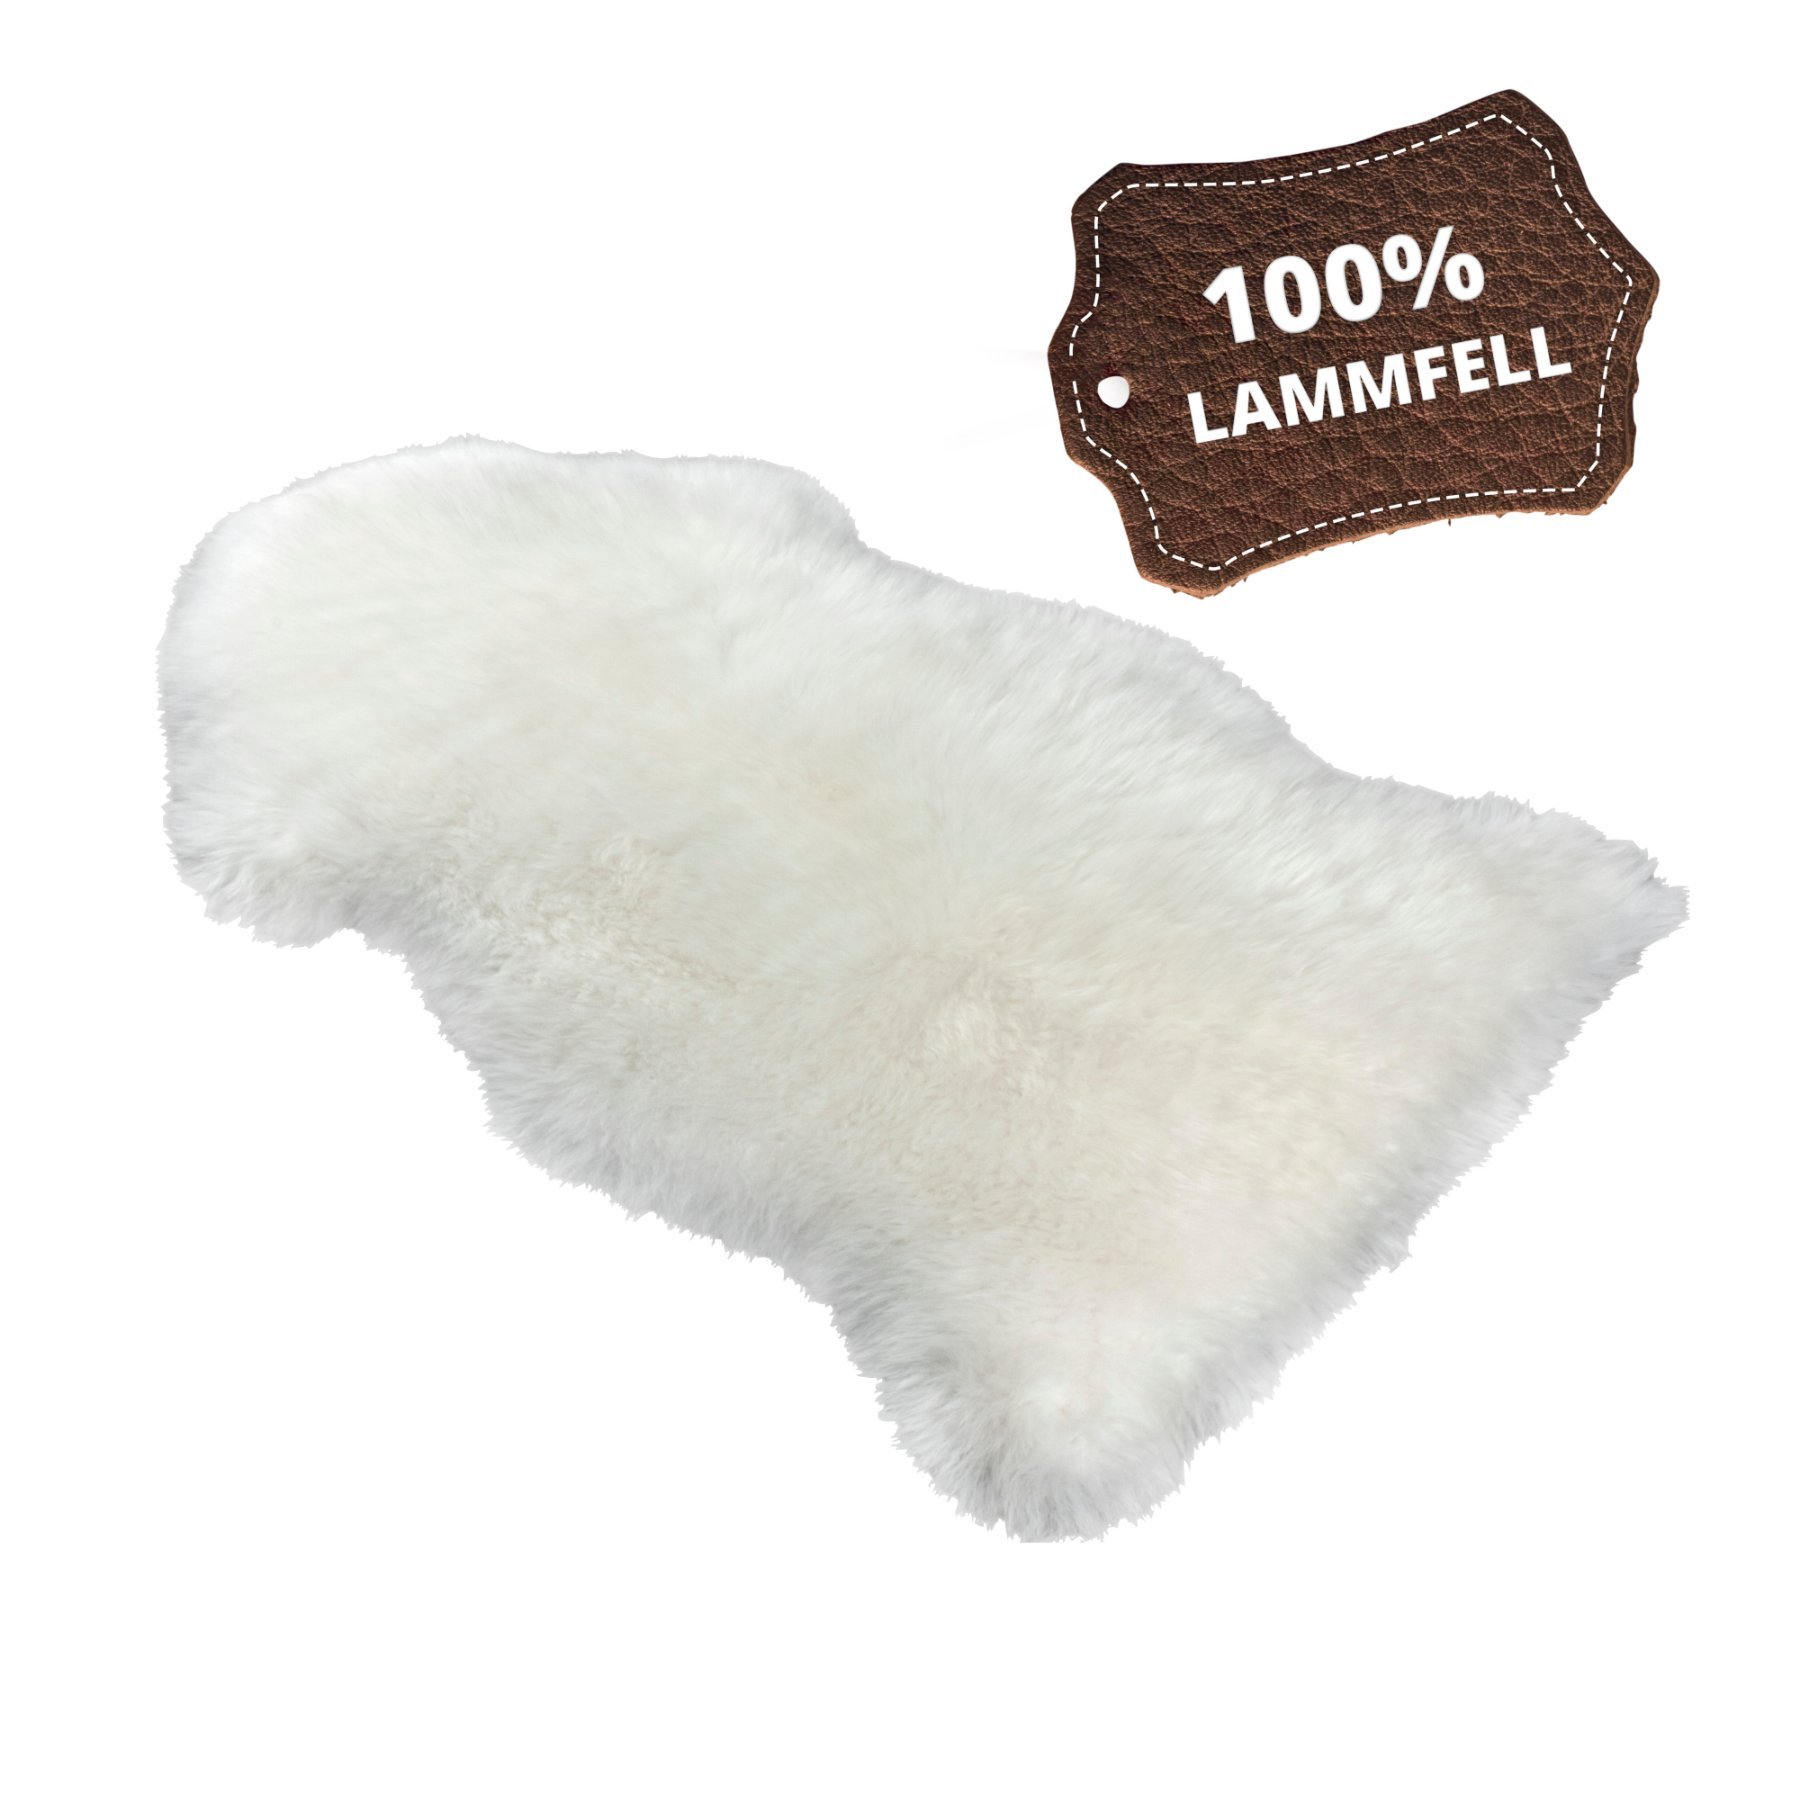 Tappeto in pelle d'agnello Blake bianco 80-90cm fatto di pelle d'agnello naturale al 100%, altezza lana 50mm, ideale in soggiorno e camera da letto